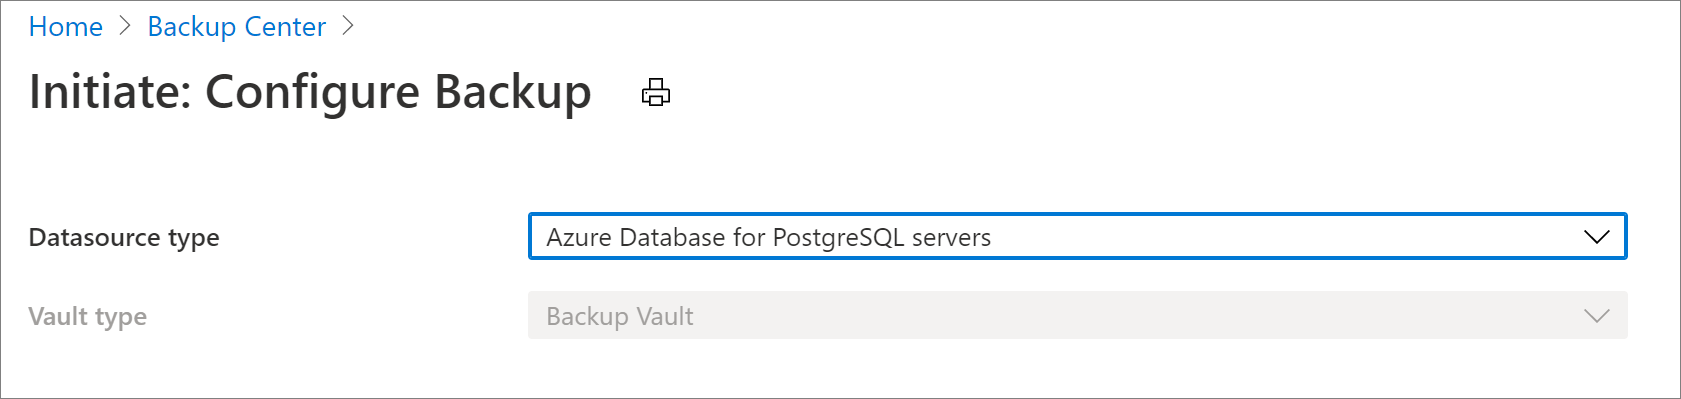 Adatforrás kiválasztása az Azure Database for PostgreSQL Server biztonsági mentésének konfigurálásához